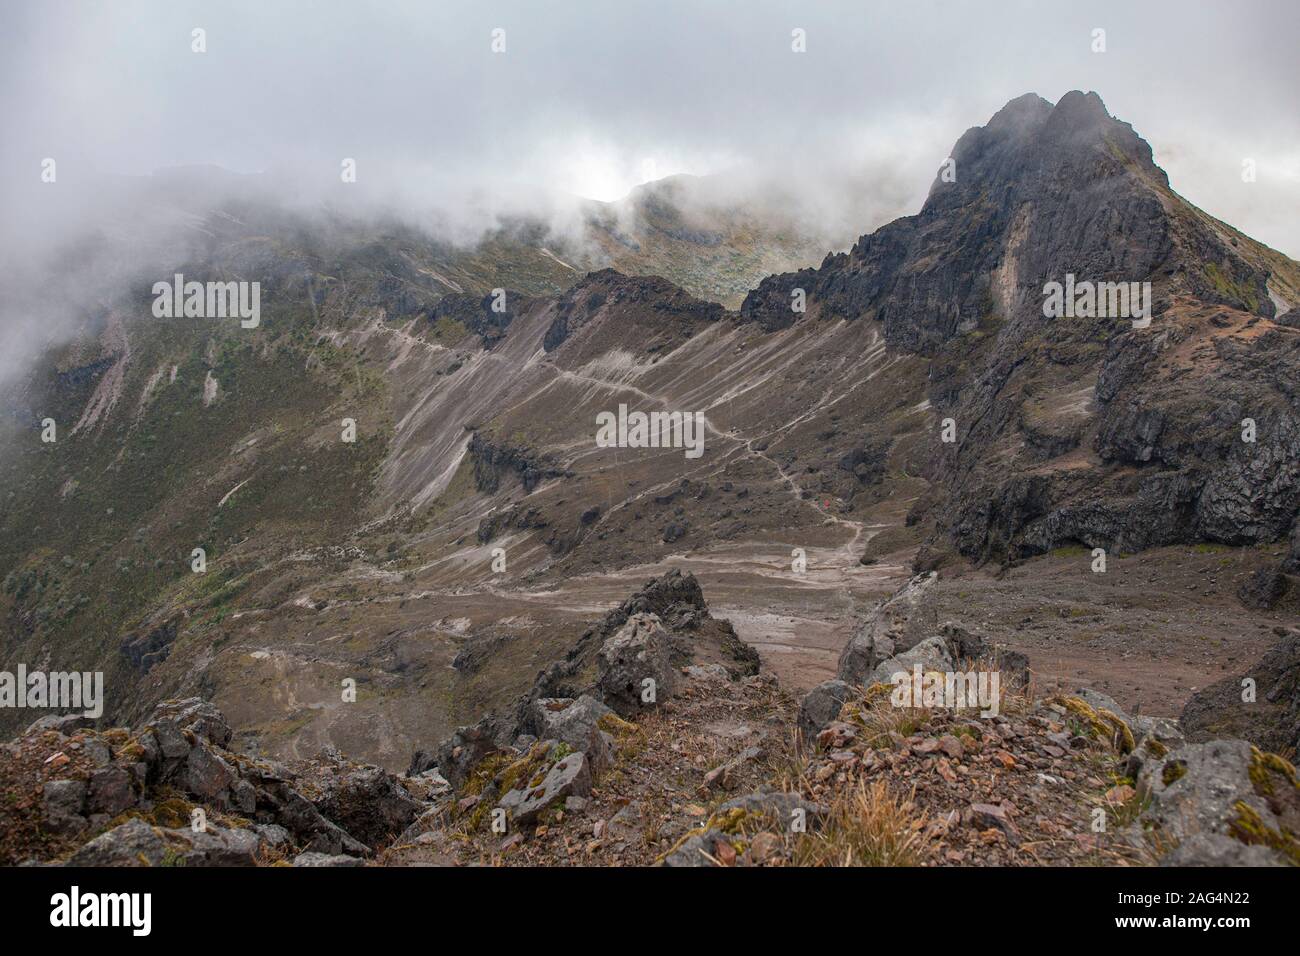 Landscape around the summit of the Rucu Pichincha volcano in Quito, Ecuador. Stock Photo